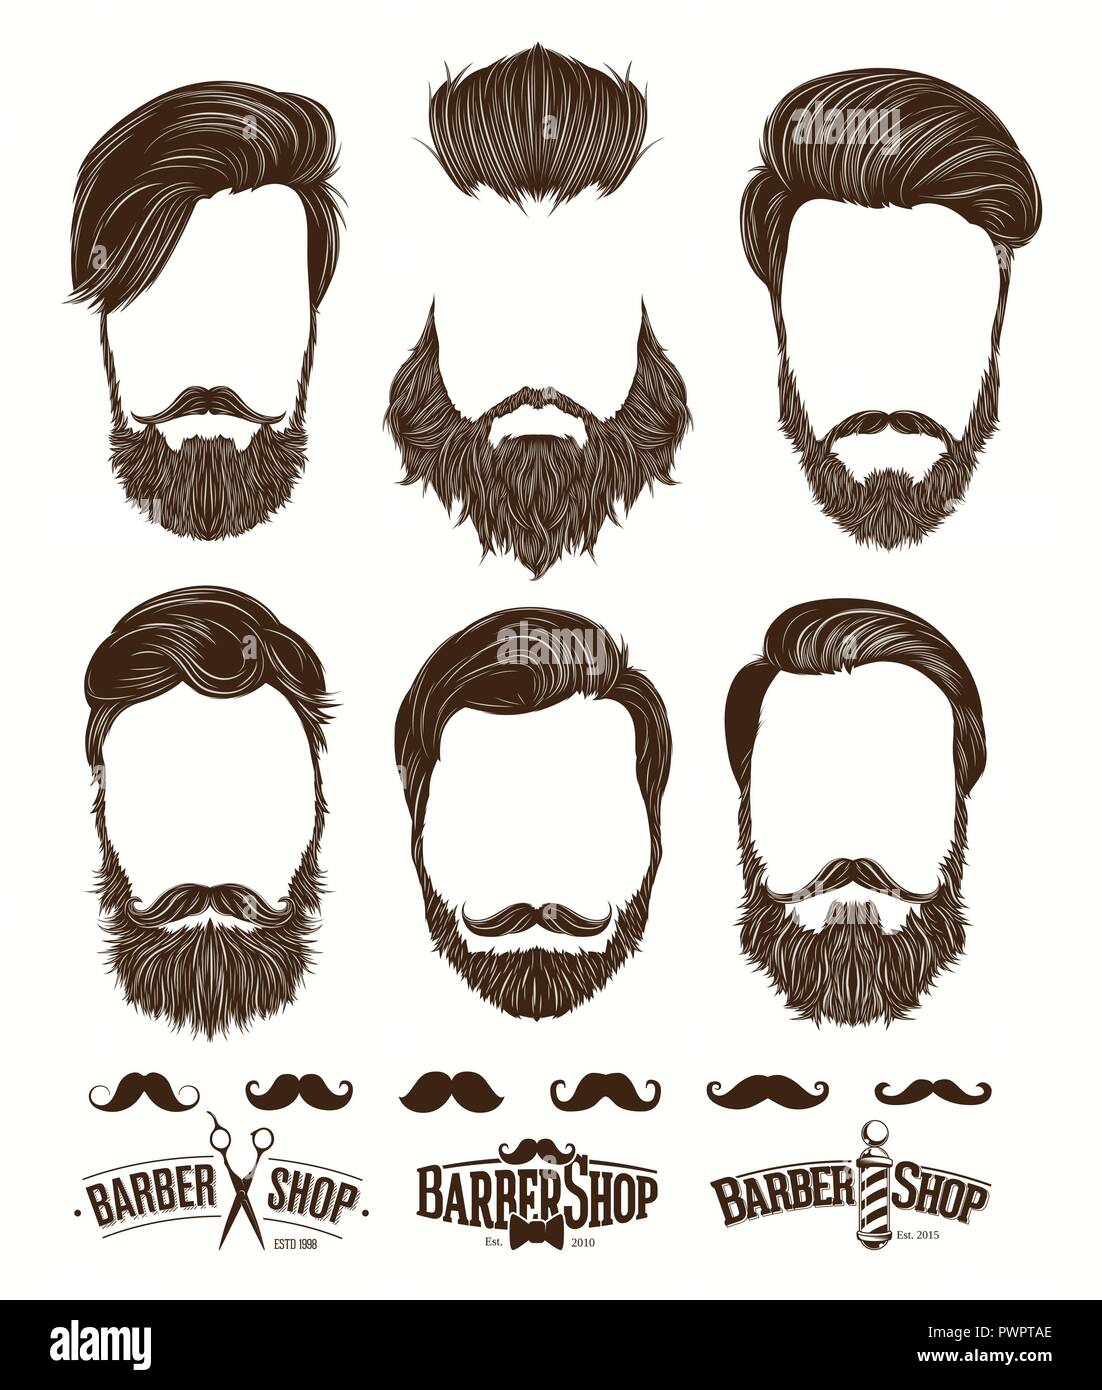 Frisur und Bart hipster Mode, Barbershop Embleme set Vektorgrafiken Vorlage für Ihr Design Stock Vektor